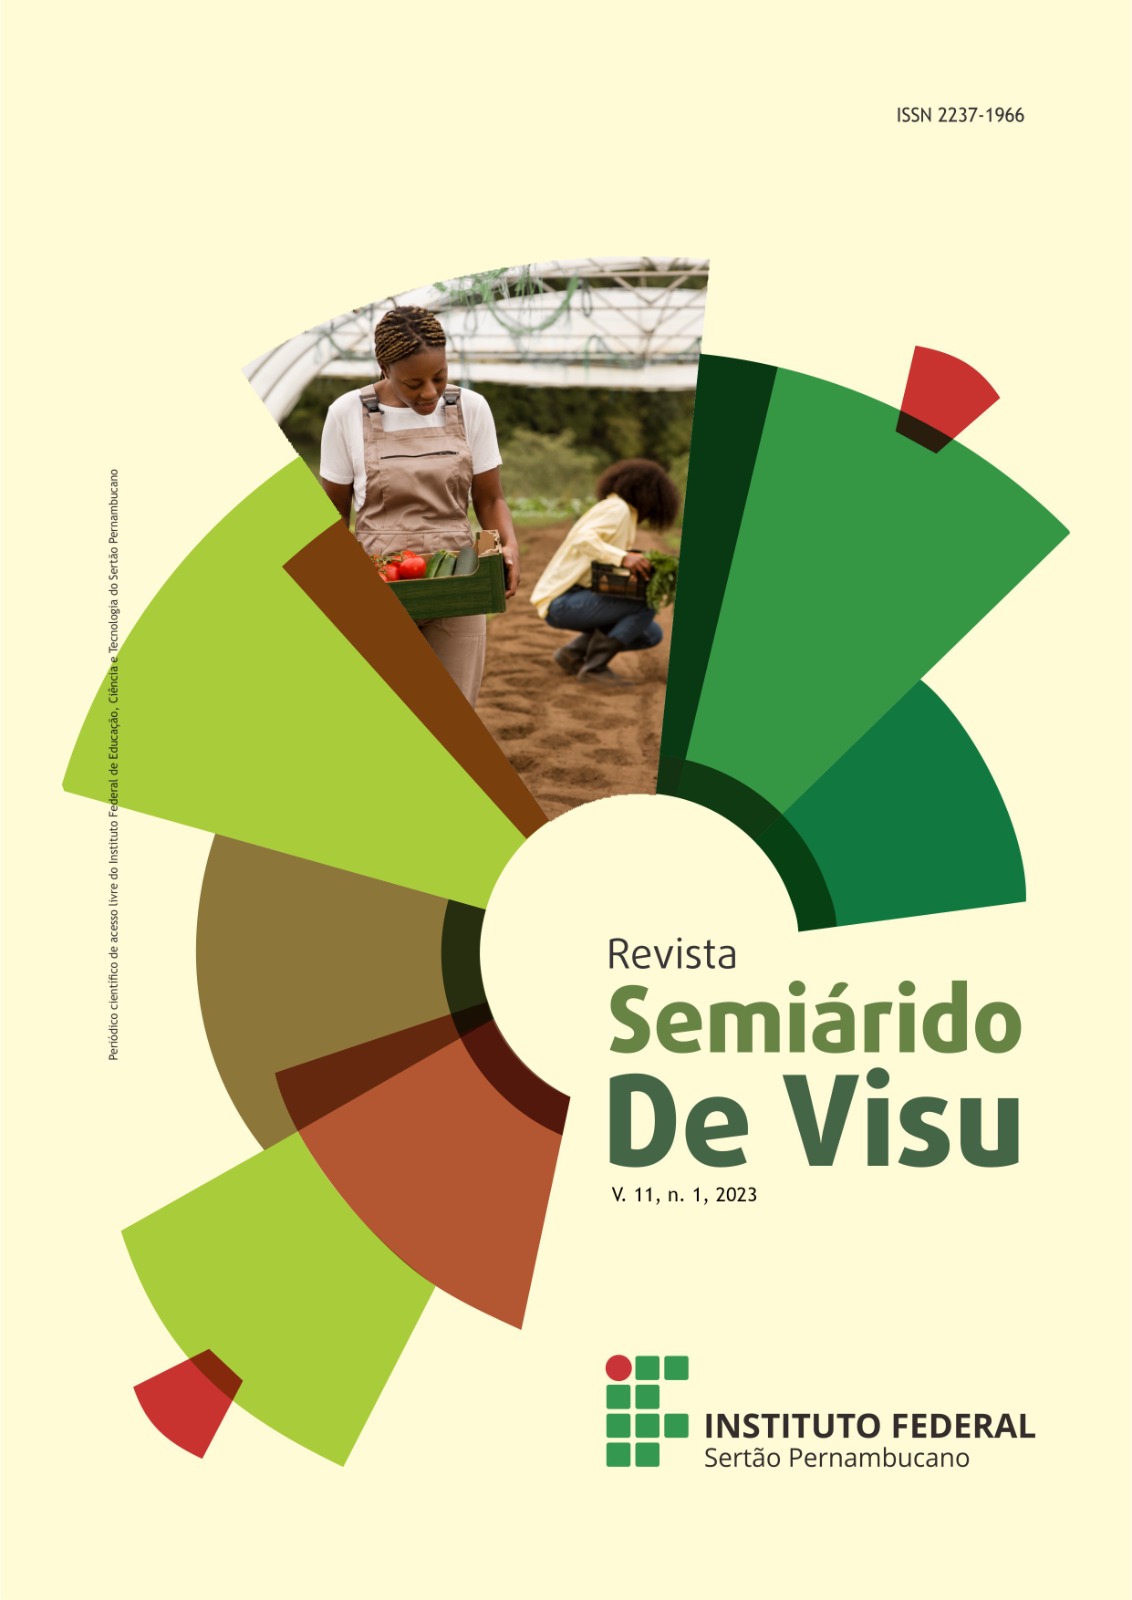 					View Vol. 11 No. 1 (2023): Revista Semiárido De Visu - v. 11, n. 1, 2023
				